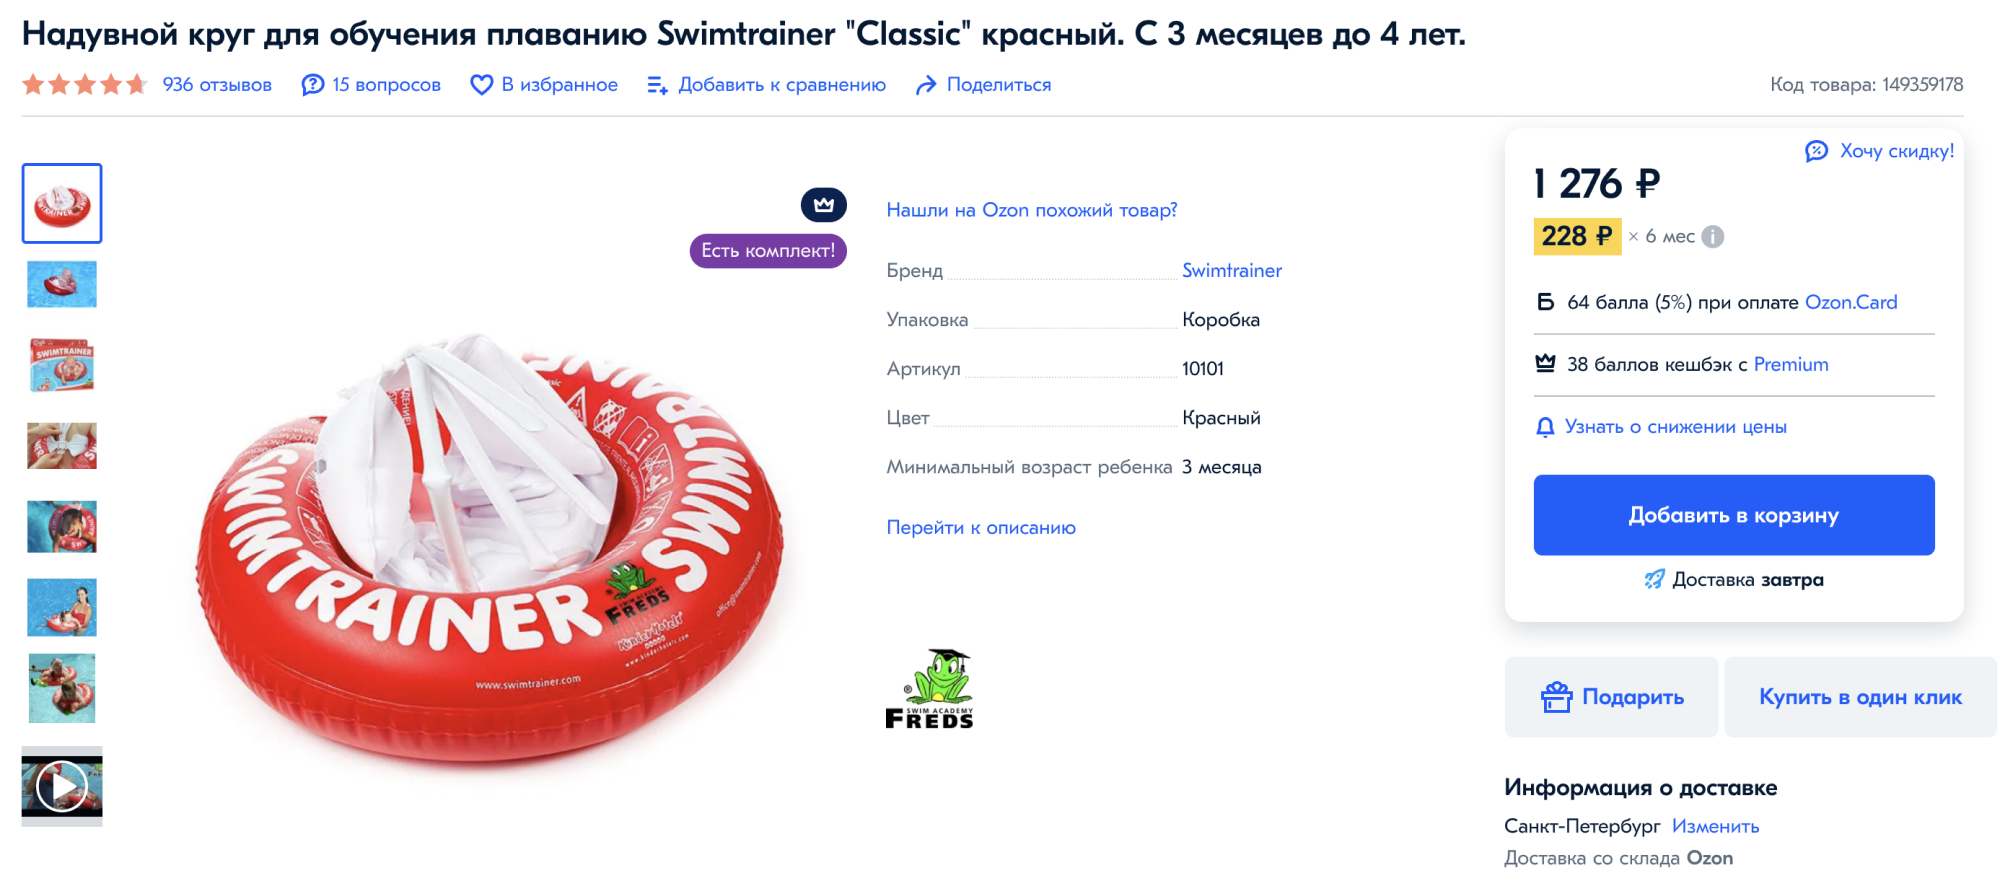 Цены на такие круги начинаются от 300 ₽, но мой фаворит — круг бренда Swimtrainer. Обычно он стоит около 1300 ₽. Источник: ozon.ru